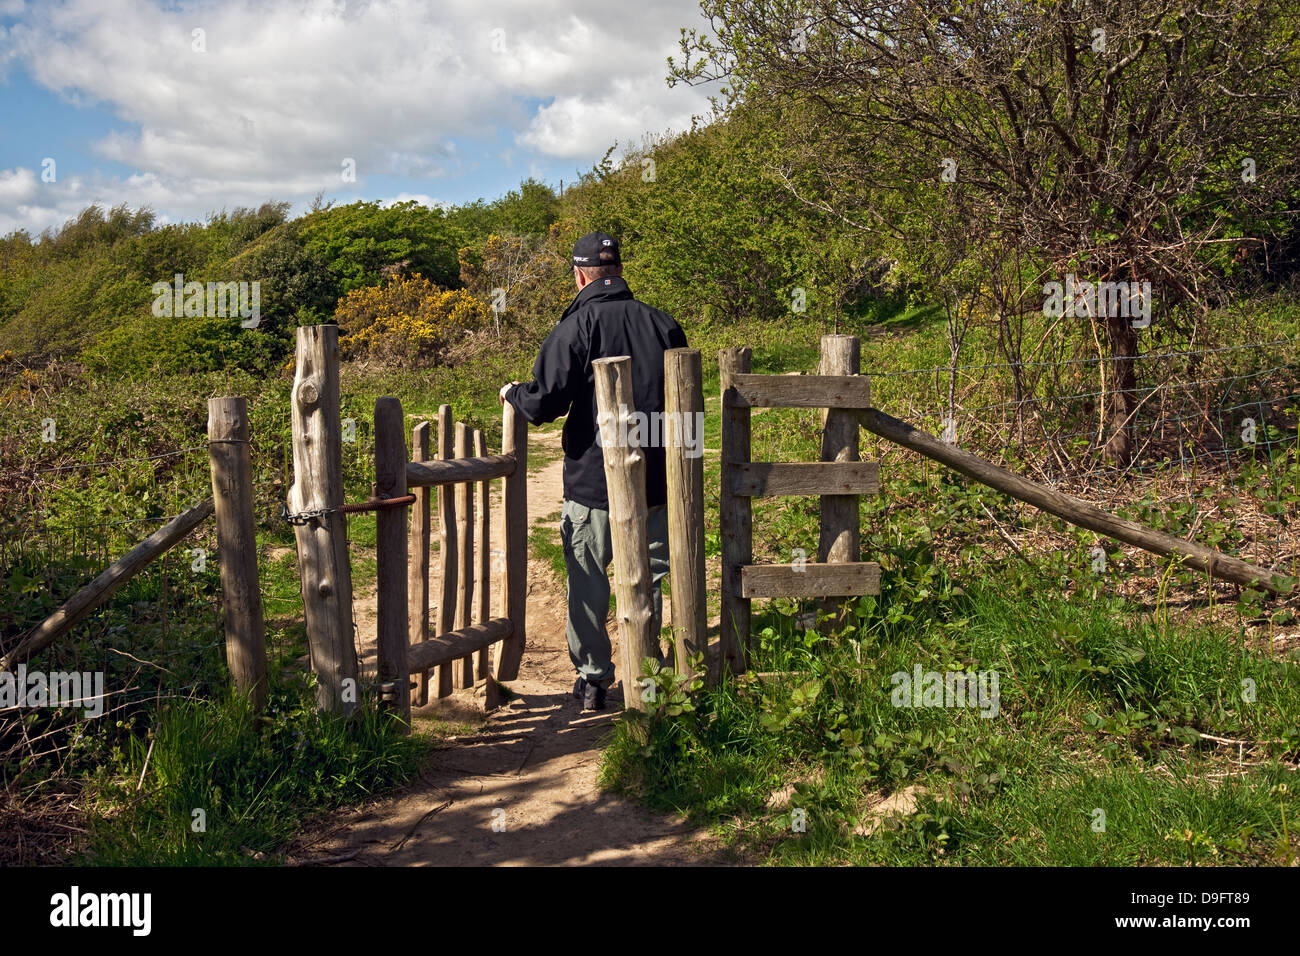 Homme touriste visiteur marcheur ouverture à travers la porte en bois sur Sentier Jack Scout Lancashire Angleterre Royaume-Uni Grande-Bretagne Grande-Bretagne Grande-Bretagne Banque D'Images